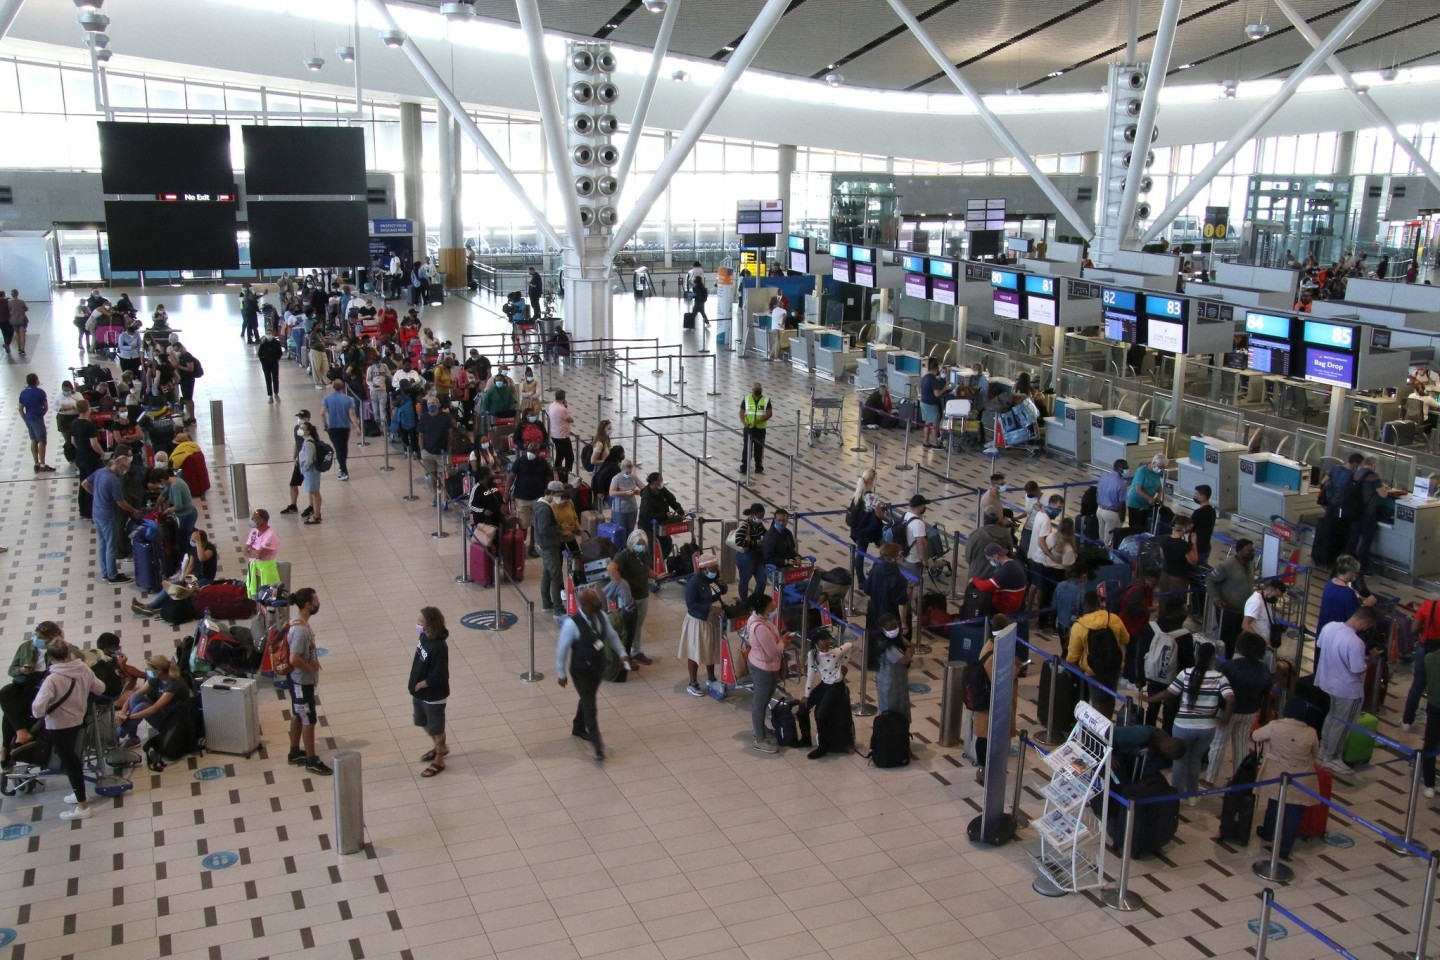 Reisende stehen am Flughafen in Kapstadt in langen Schlangen an den wenigen Schaltern an, die überhaupt noch offen sind.